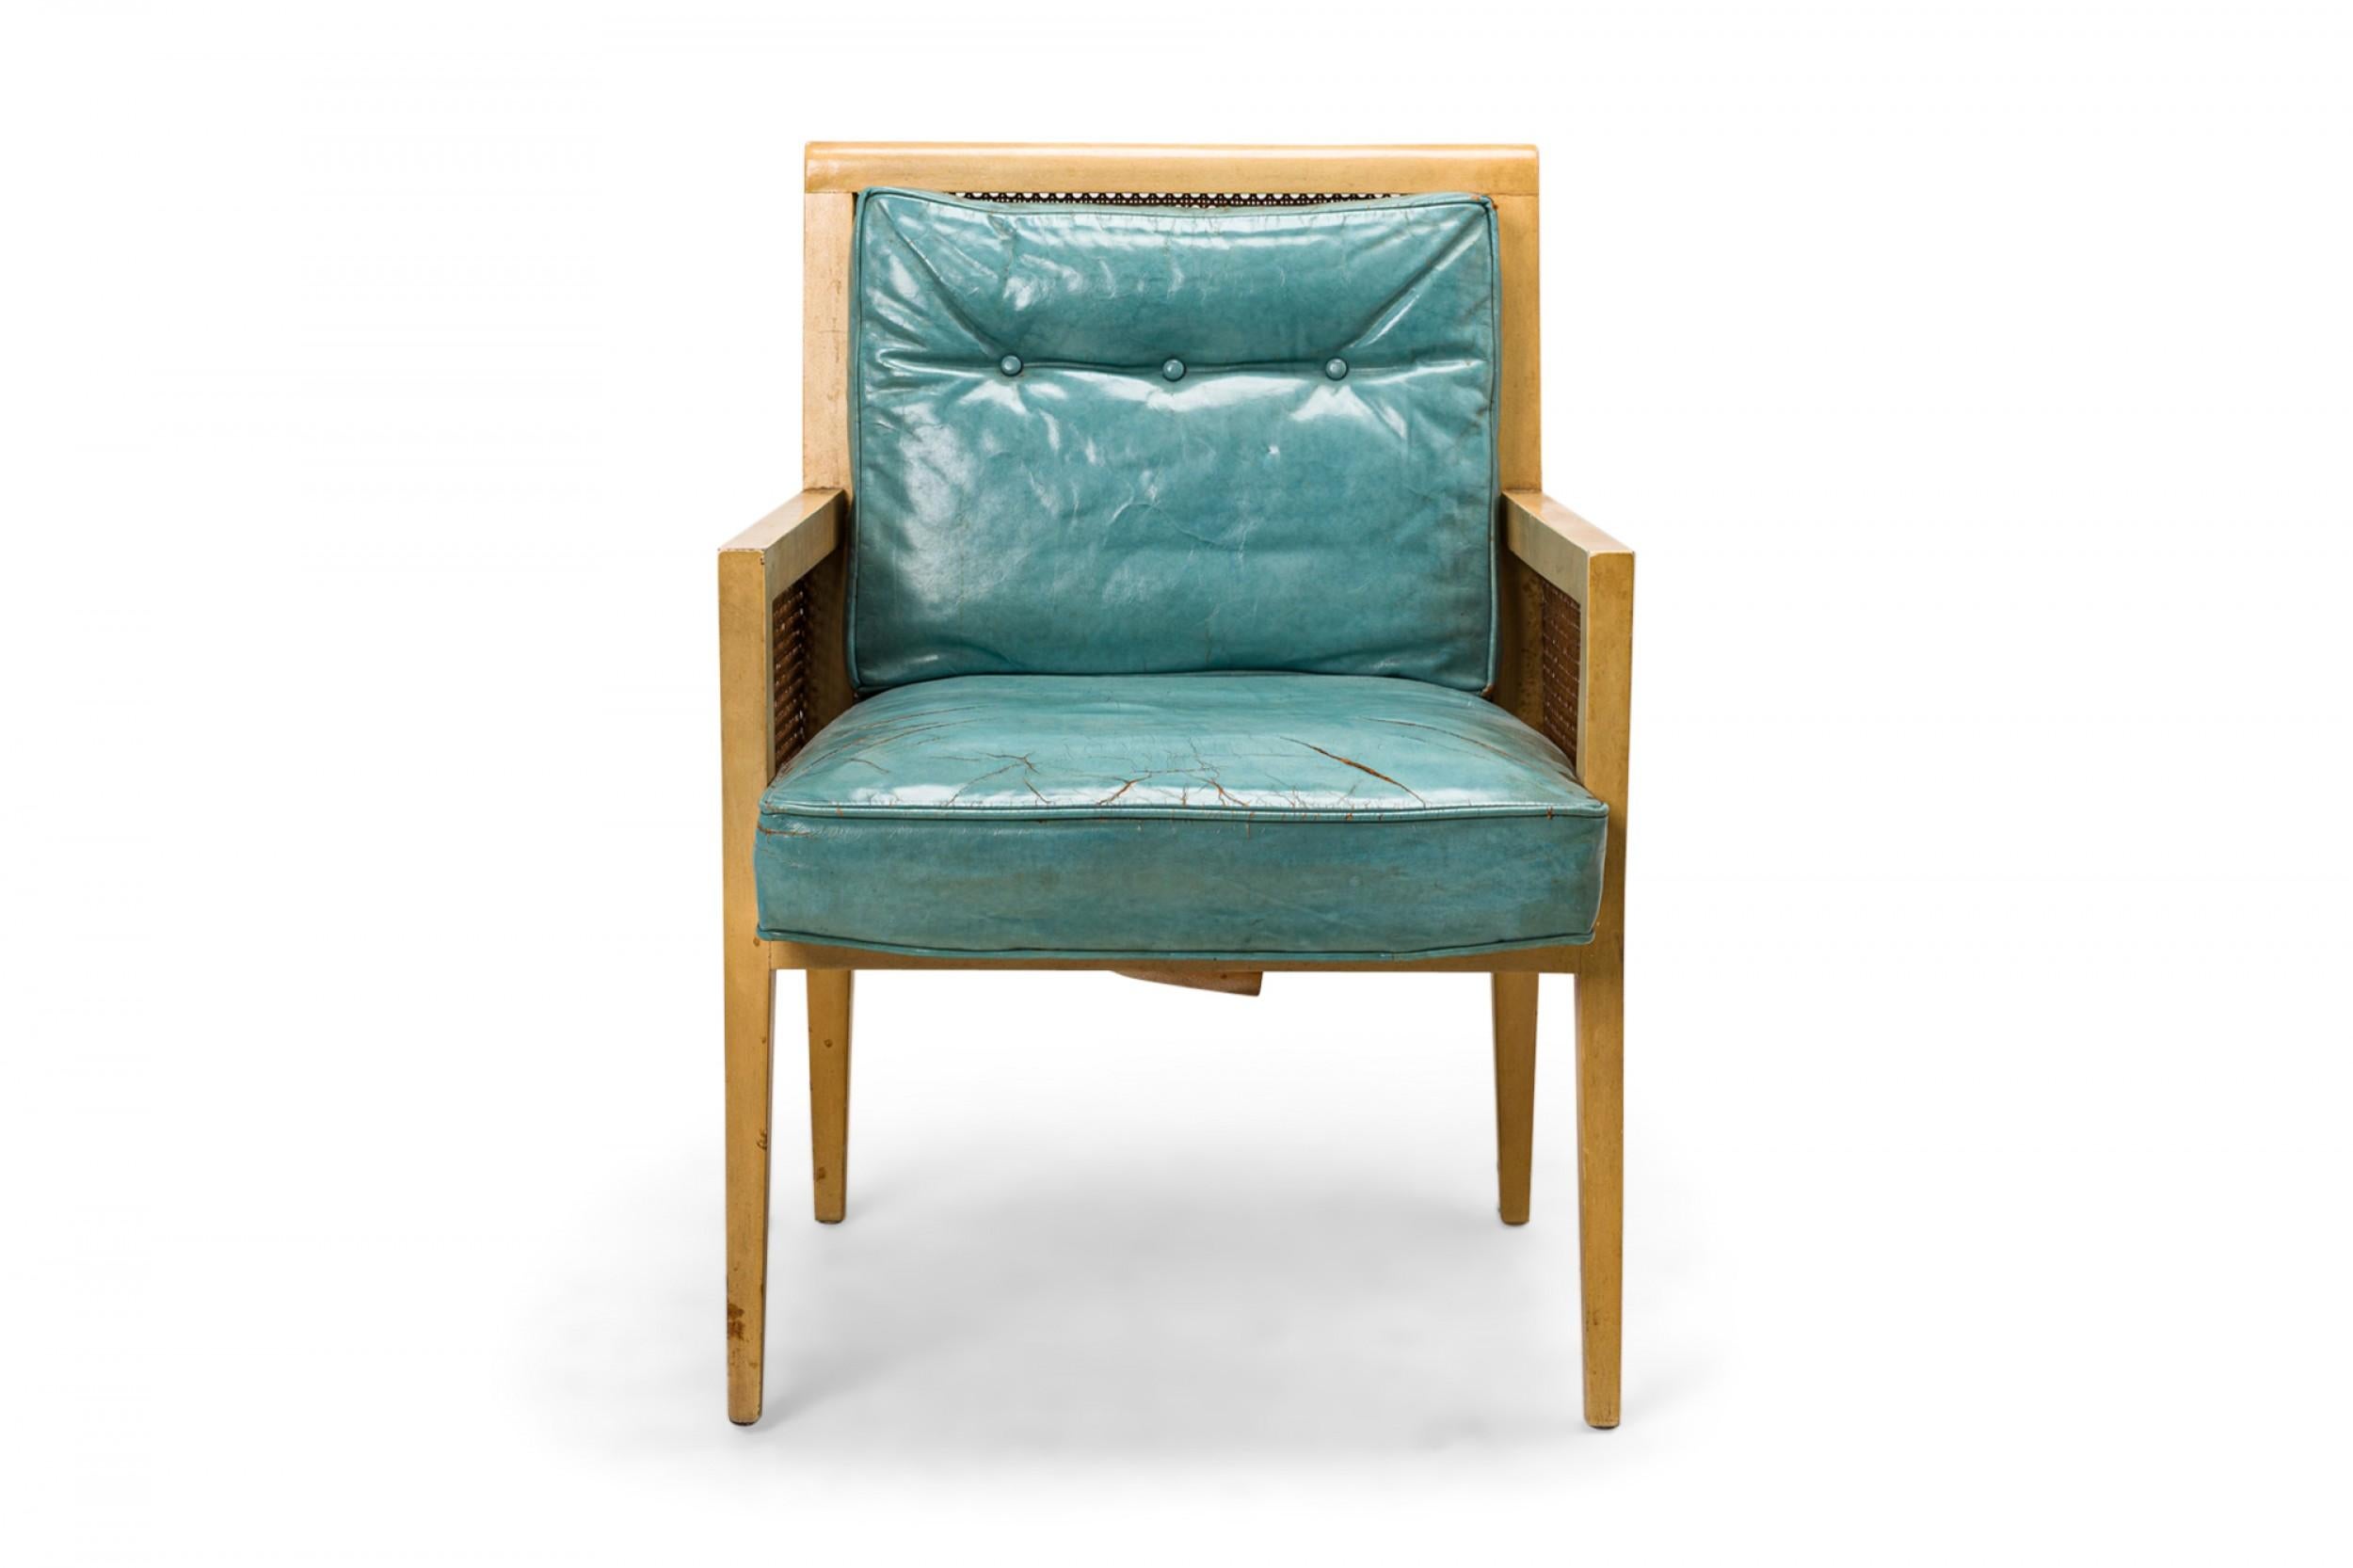 PAIRE de fauteuils de salon américains de style Mid-Century avec des cadres en bois blond, des côtés et des dossiers cannelés, et des coussins d'assise et de dossier en cuir bleu clair avec des détails de dossier à boutons. (PRIX PAR PAIRE)
